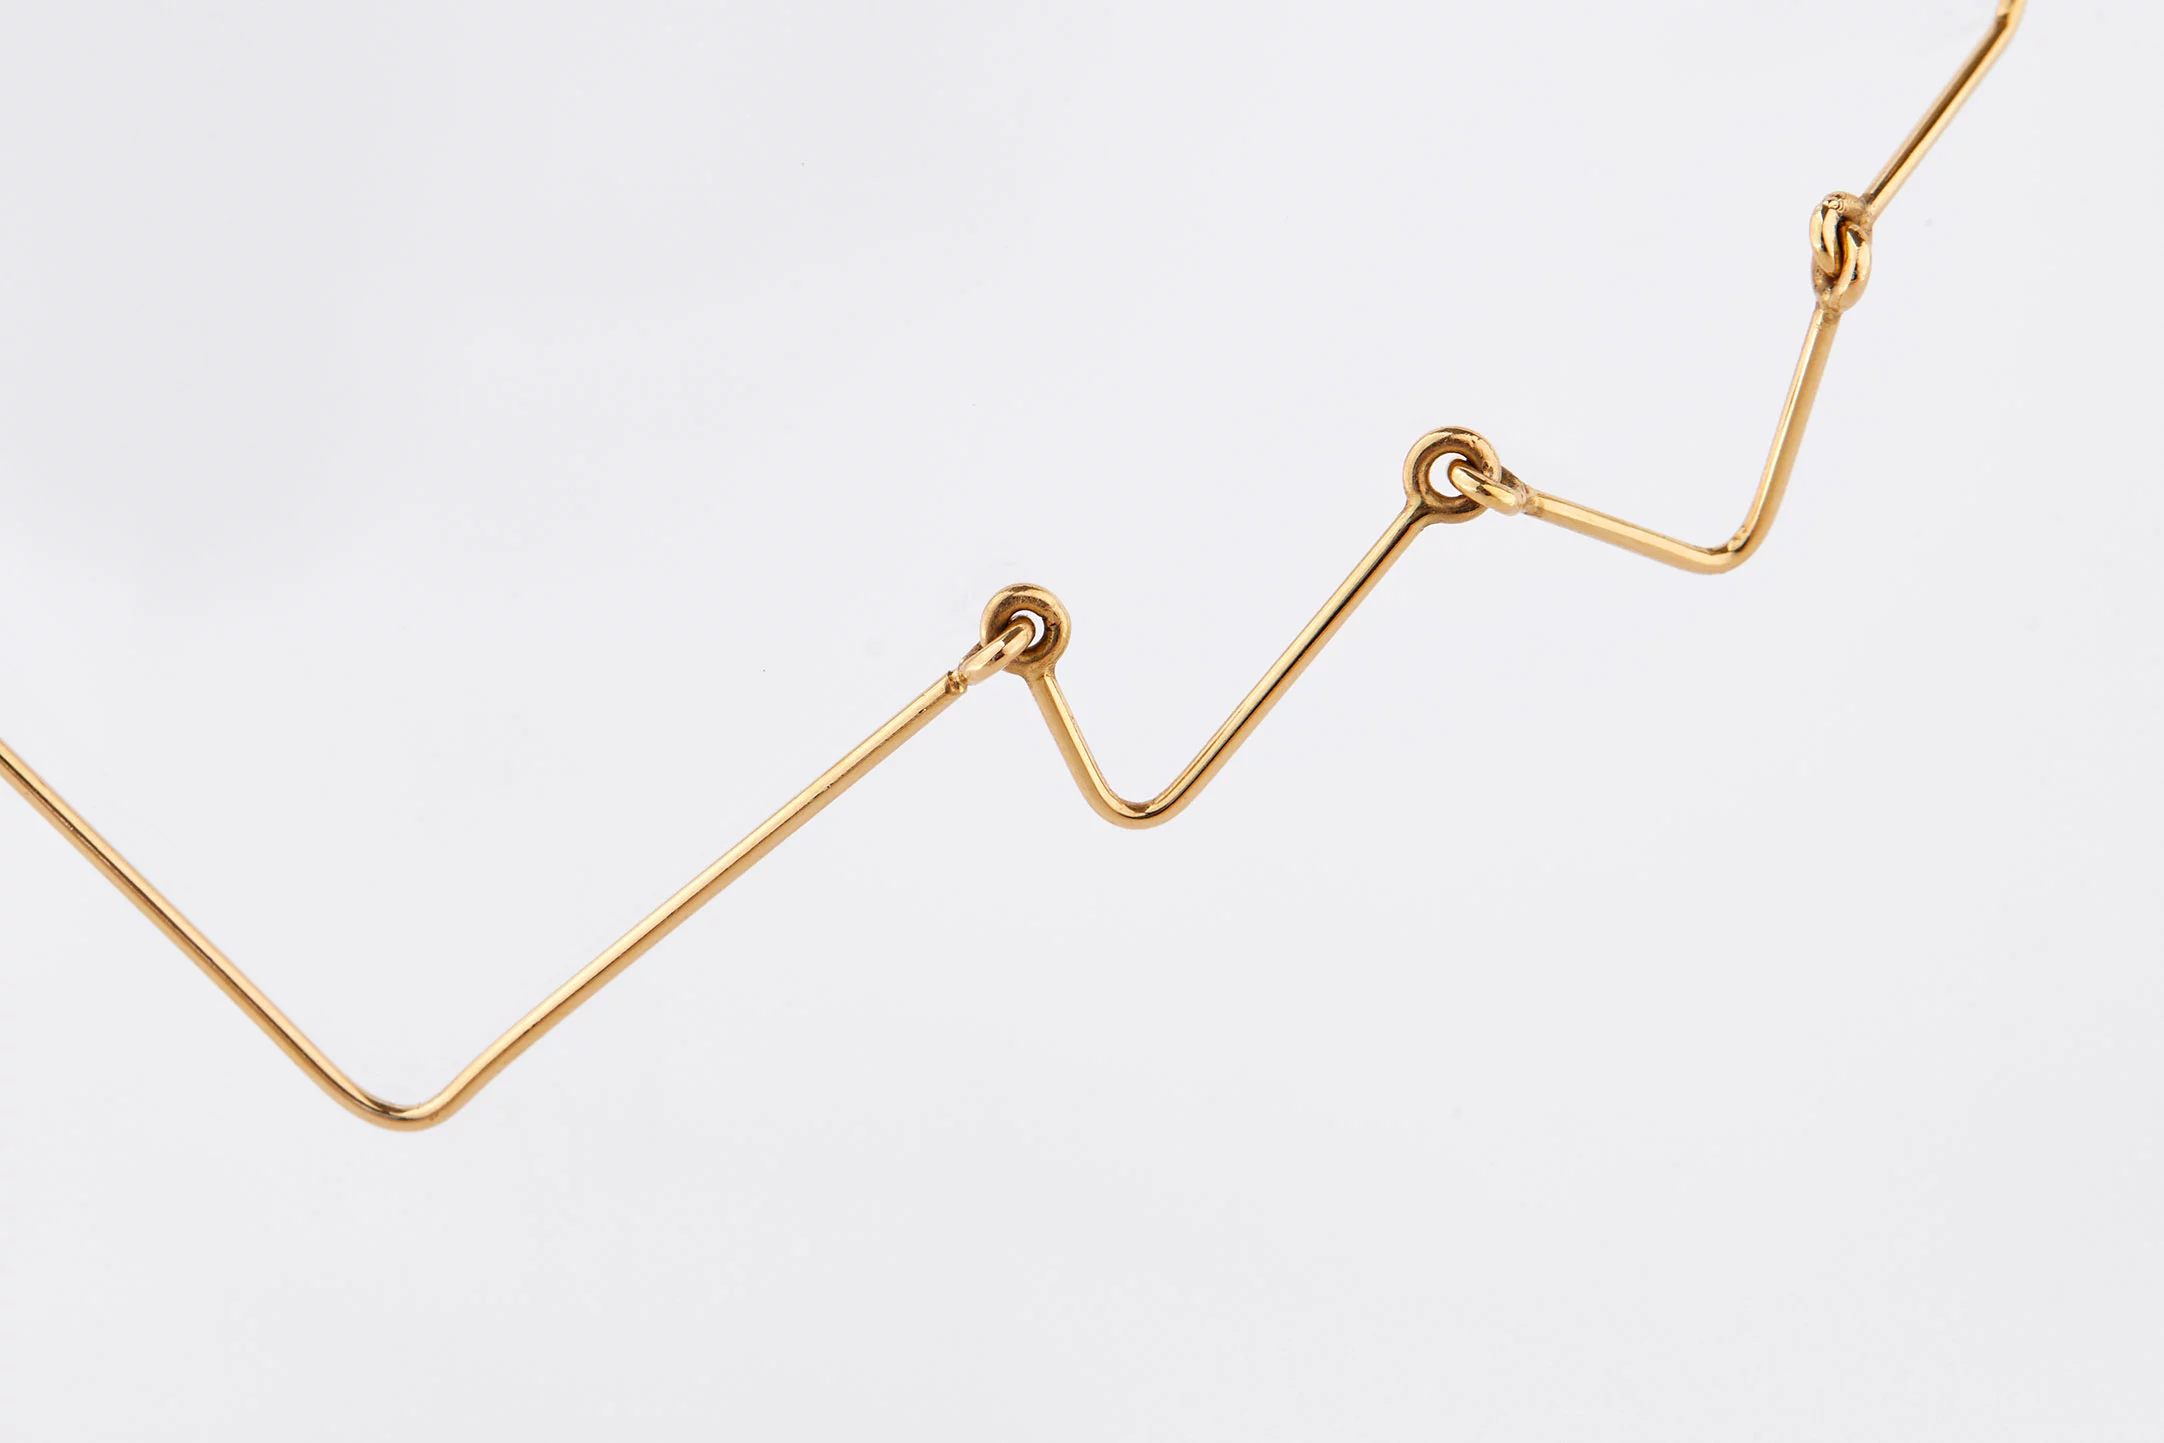 Cou de foudre Yellow Gold - Dominique Modiano - Jewellery - Galerie kreo